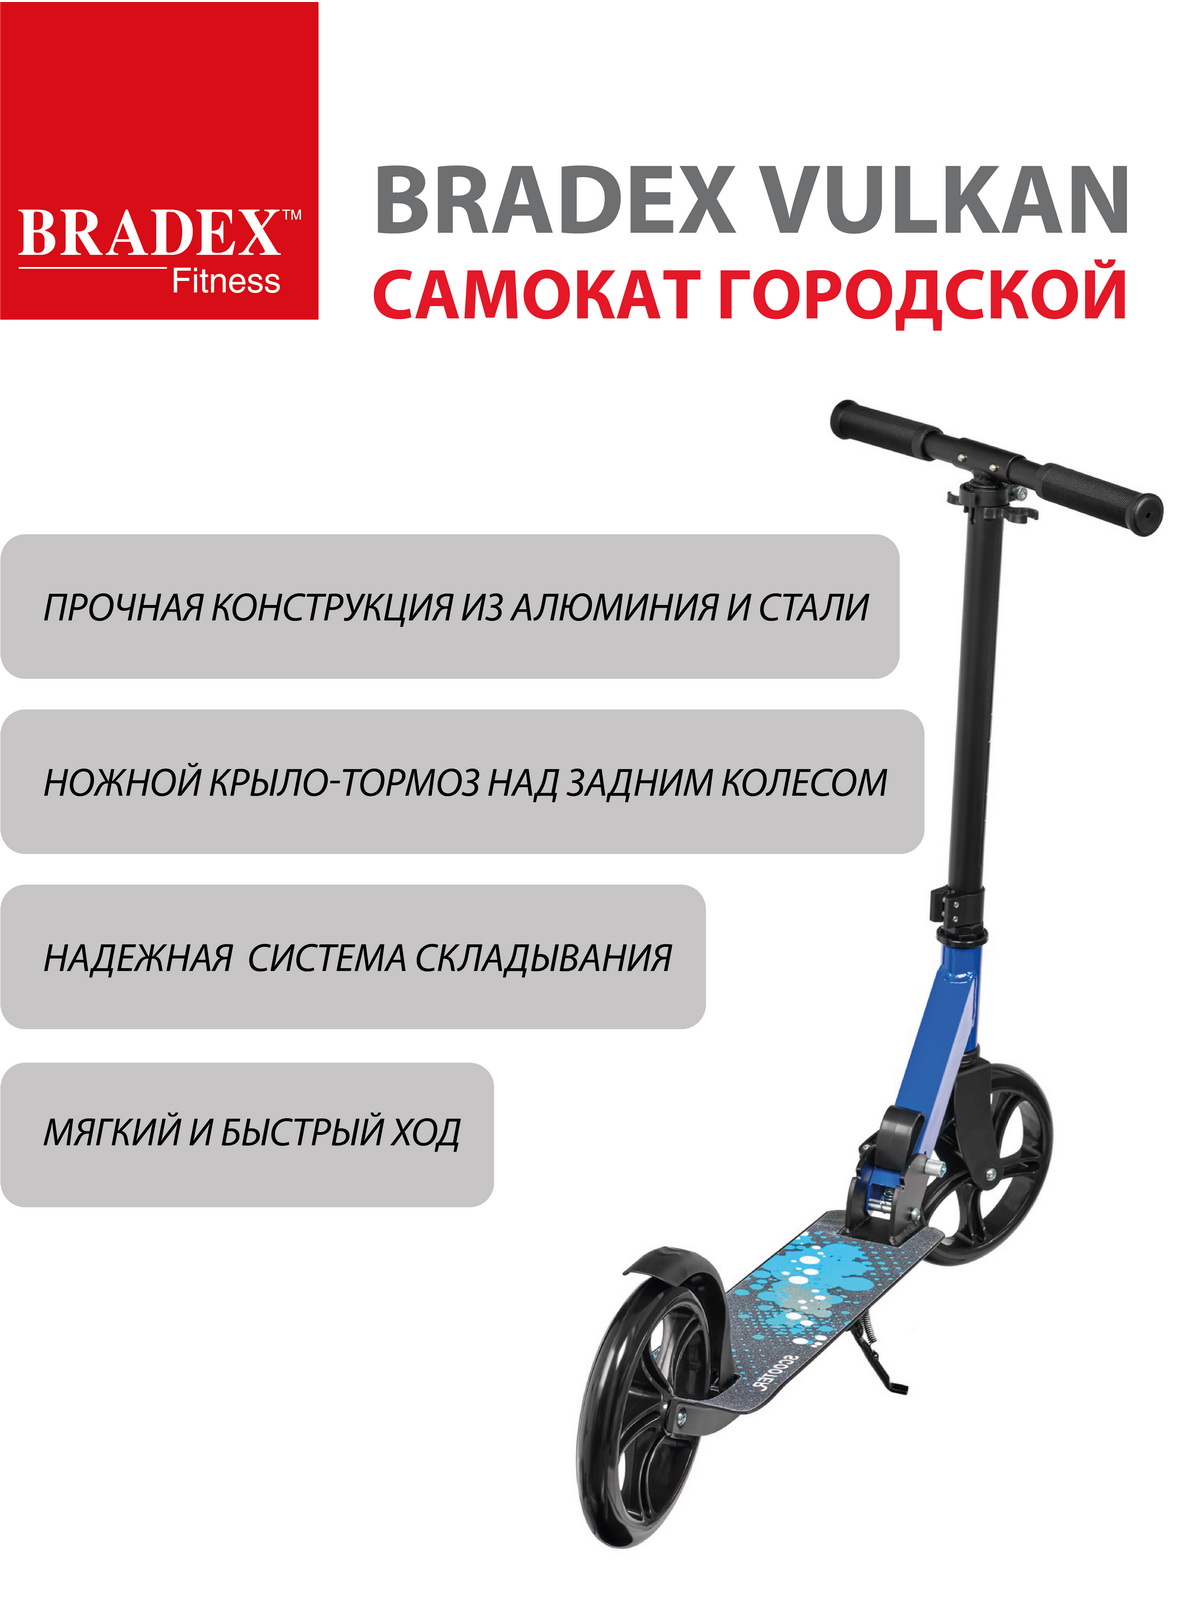 Самокат Bradex городской колеса 200 мм VULKAN - фото 5